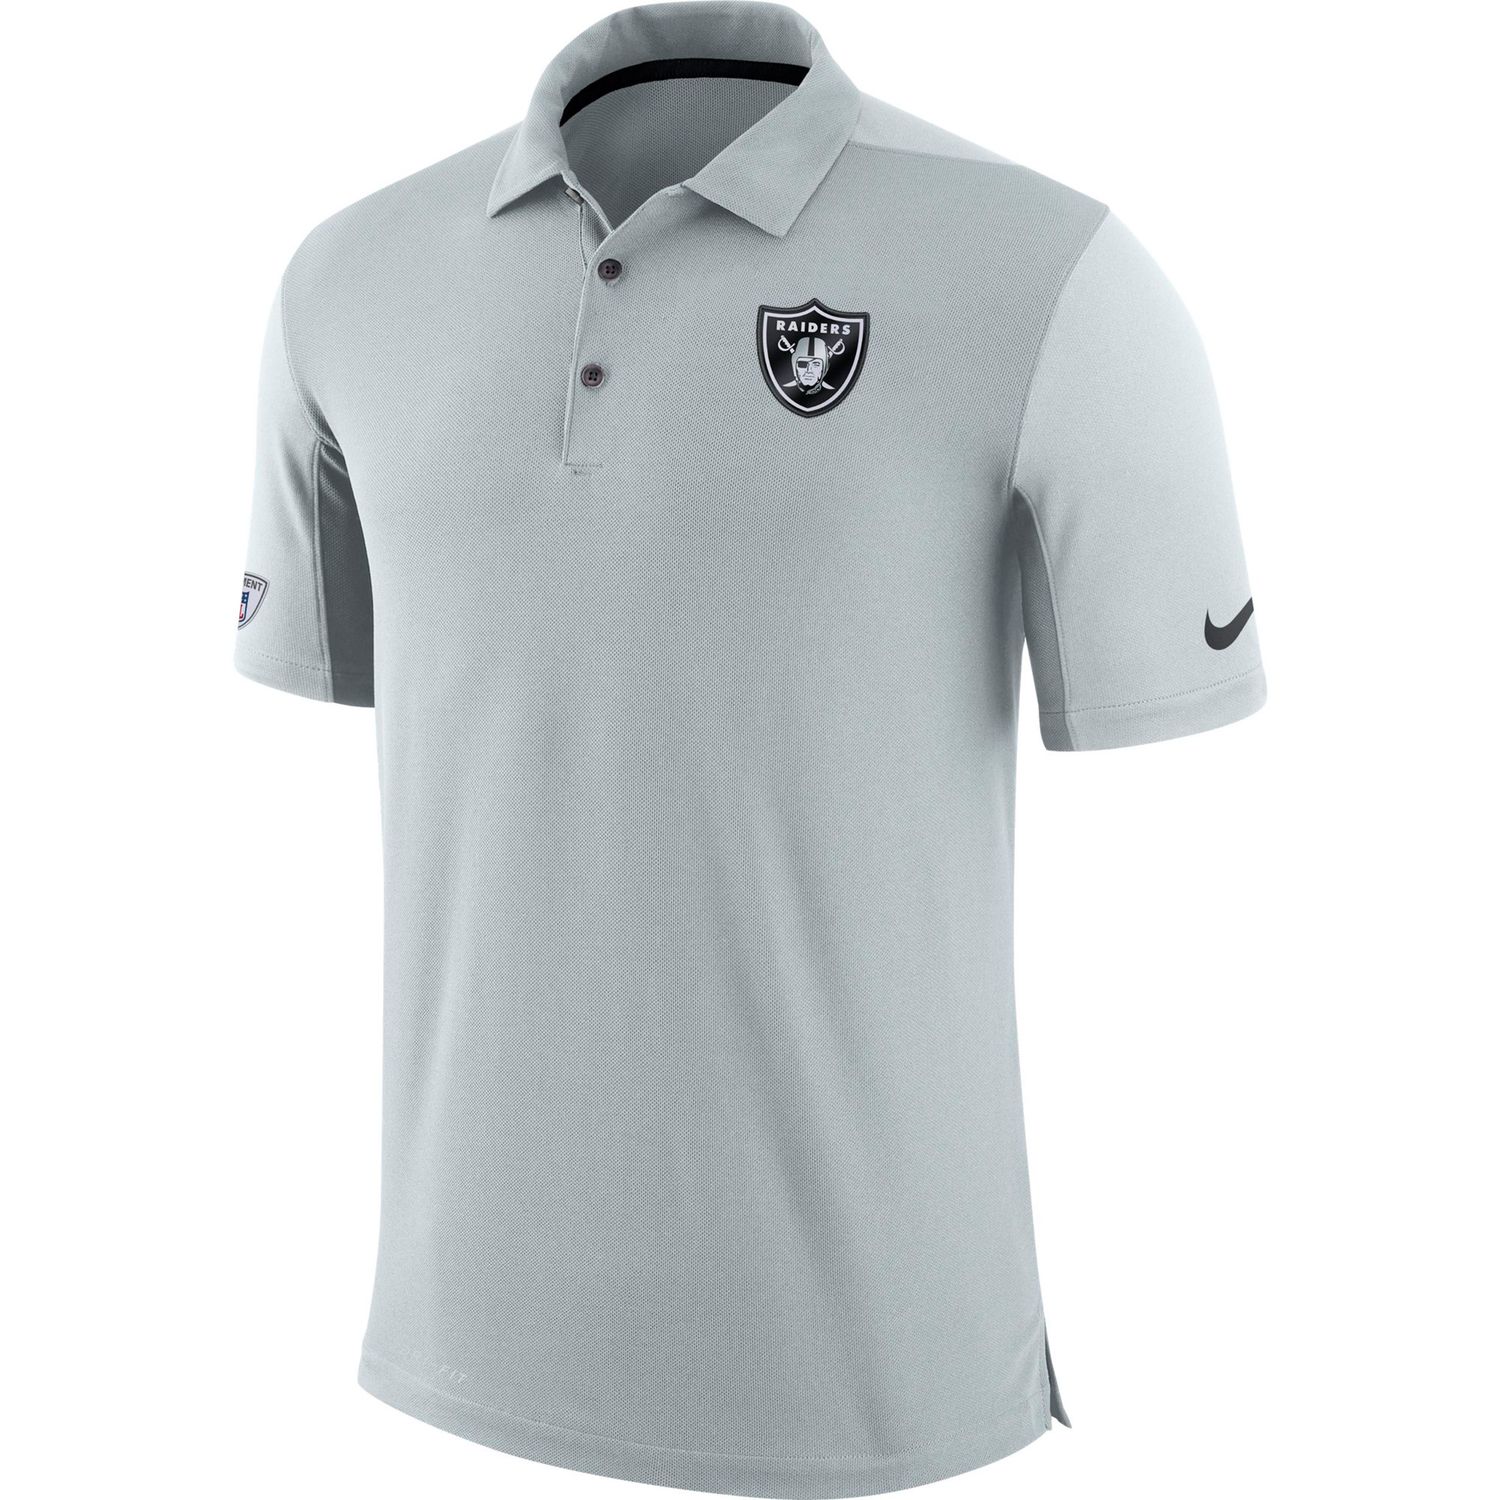 Men's Nike Oakland Raiders Polo Shirt